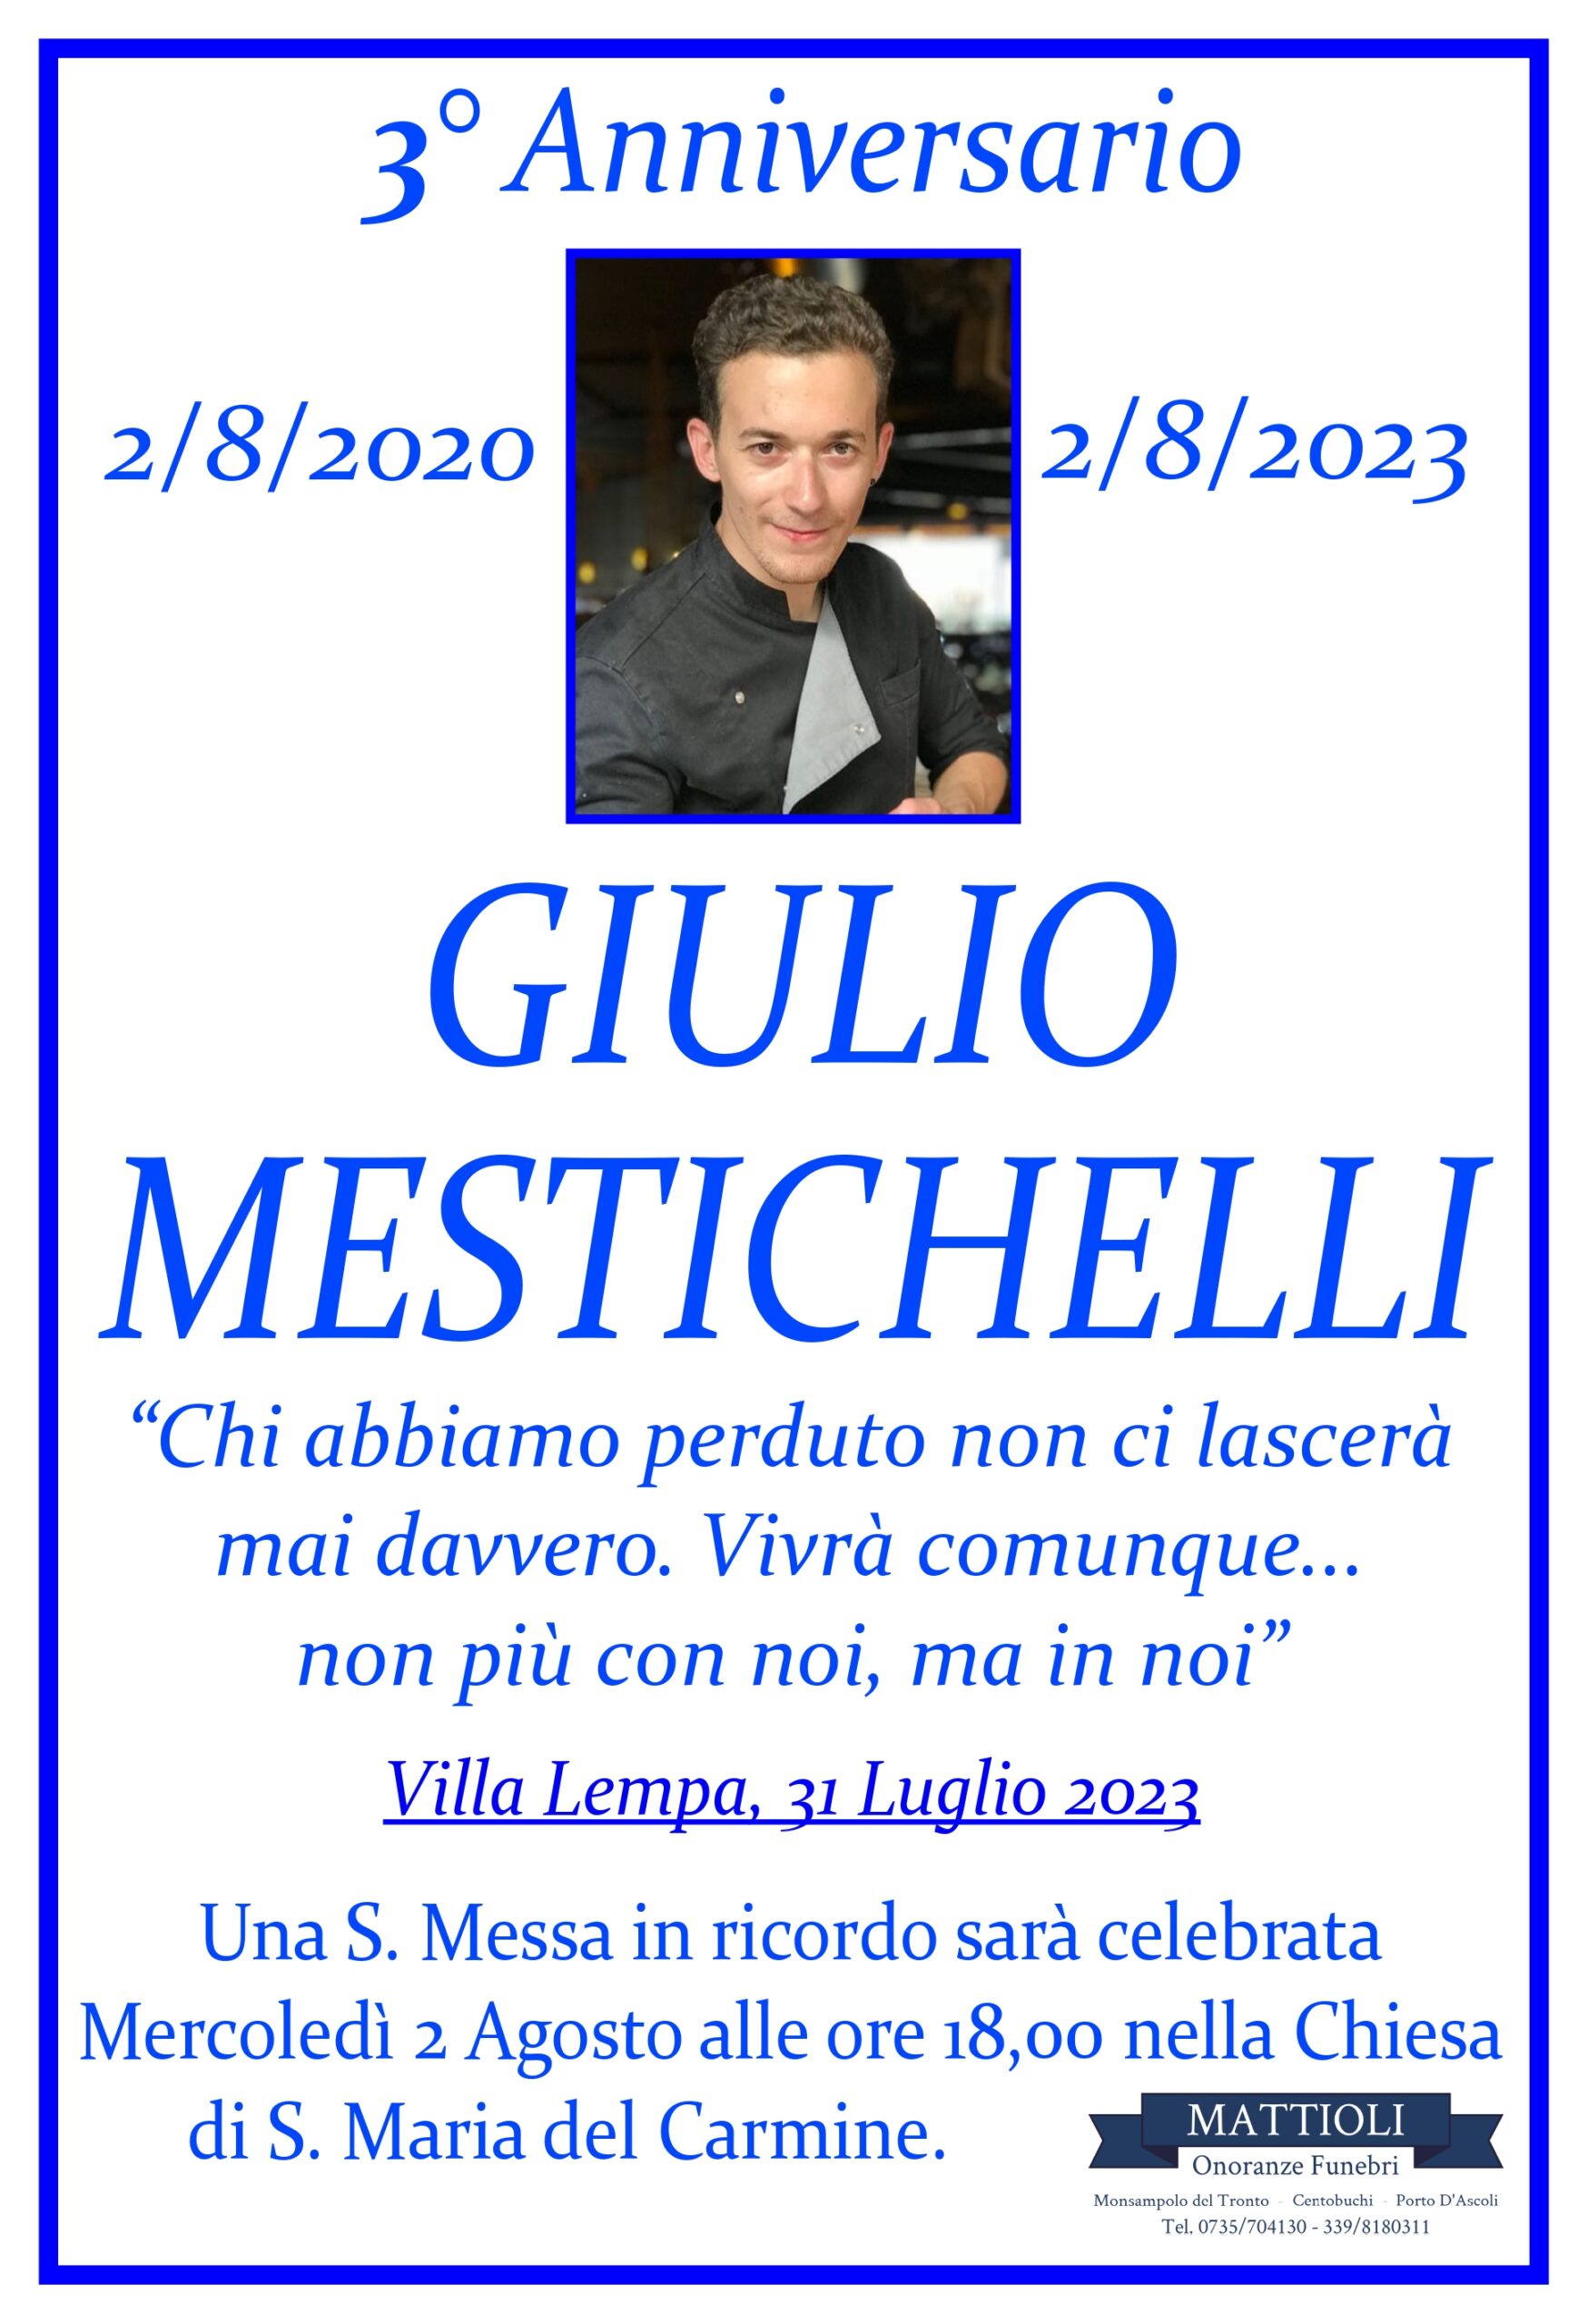 Terzo anniversario Giulio Mestichelli